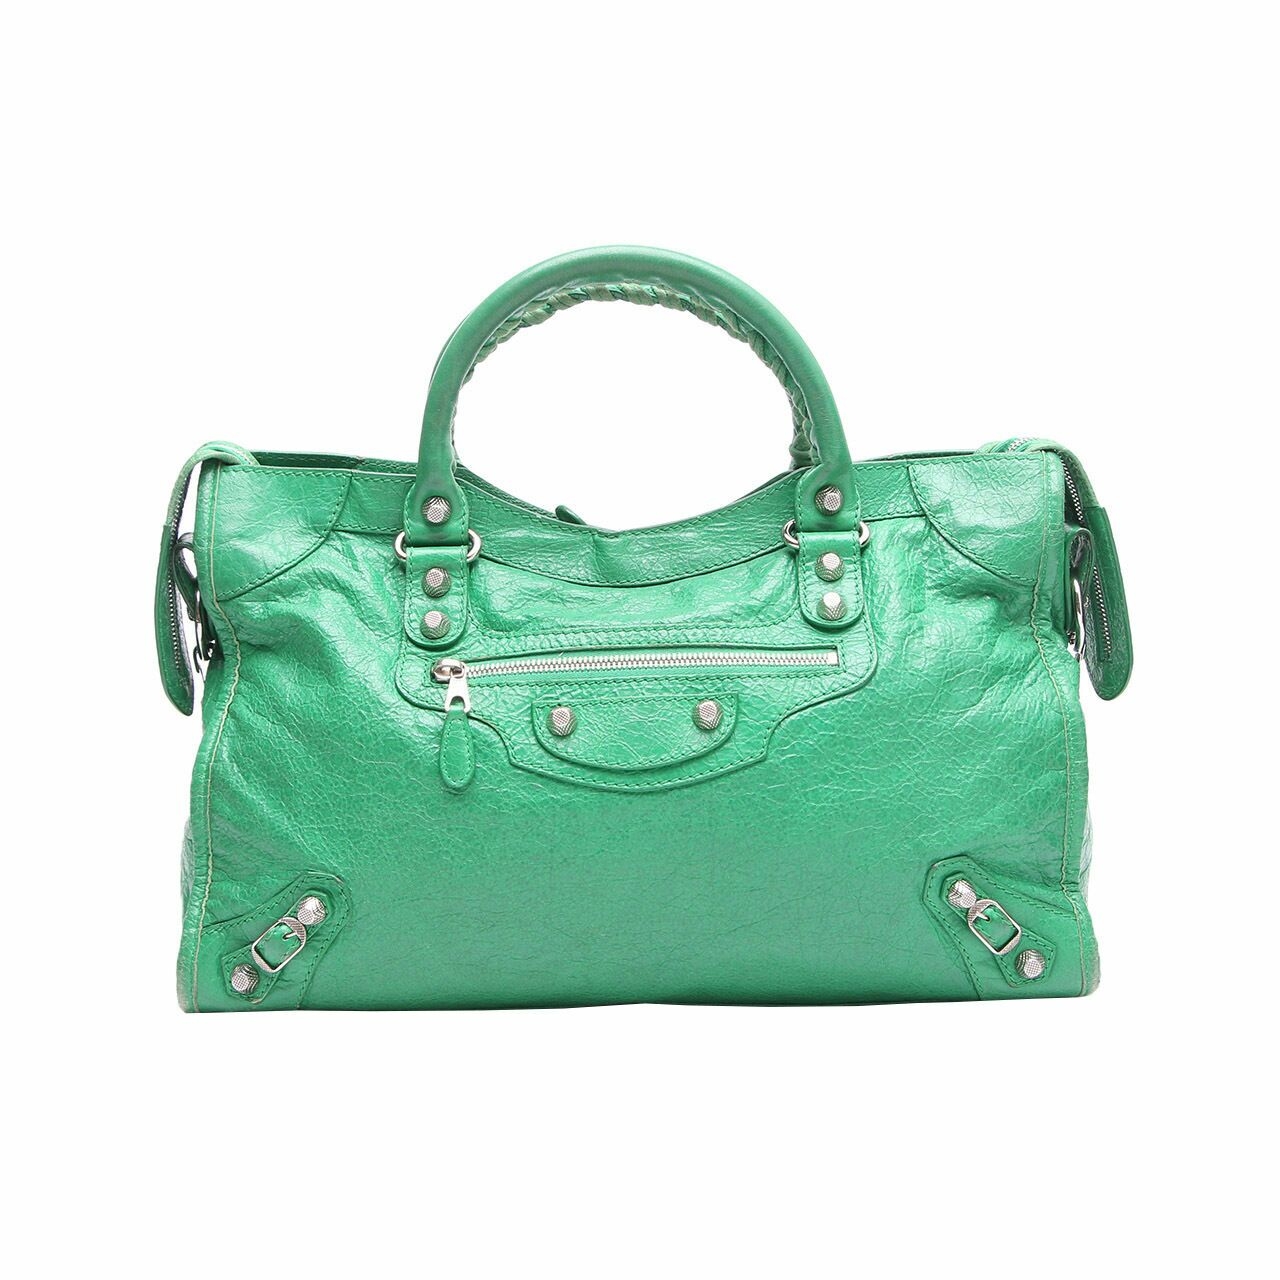 Balenciaga Classic City Green Satchel Bag